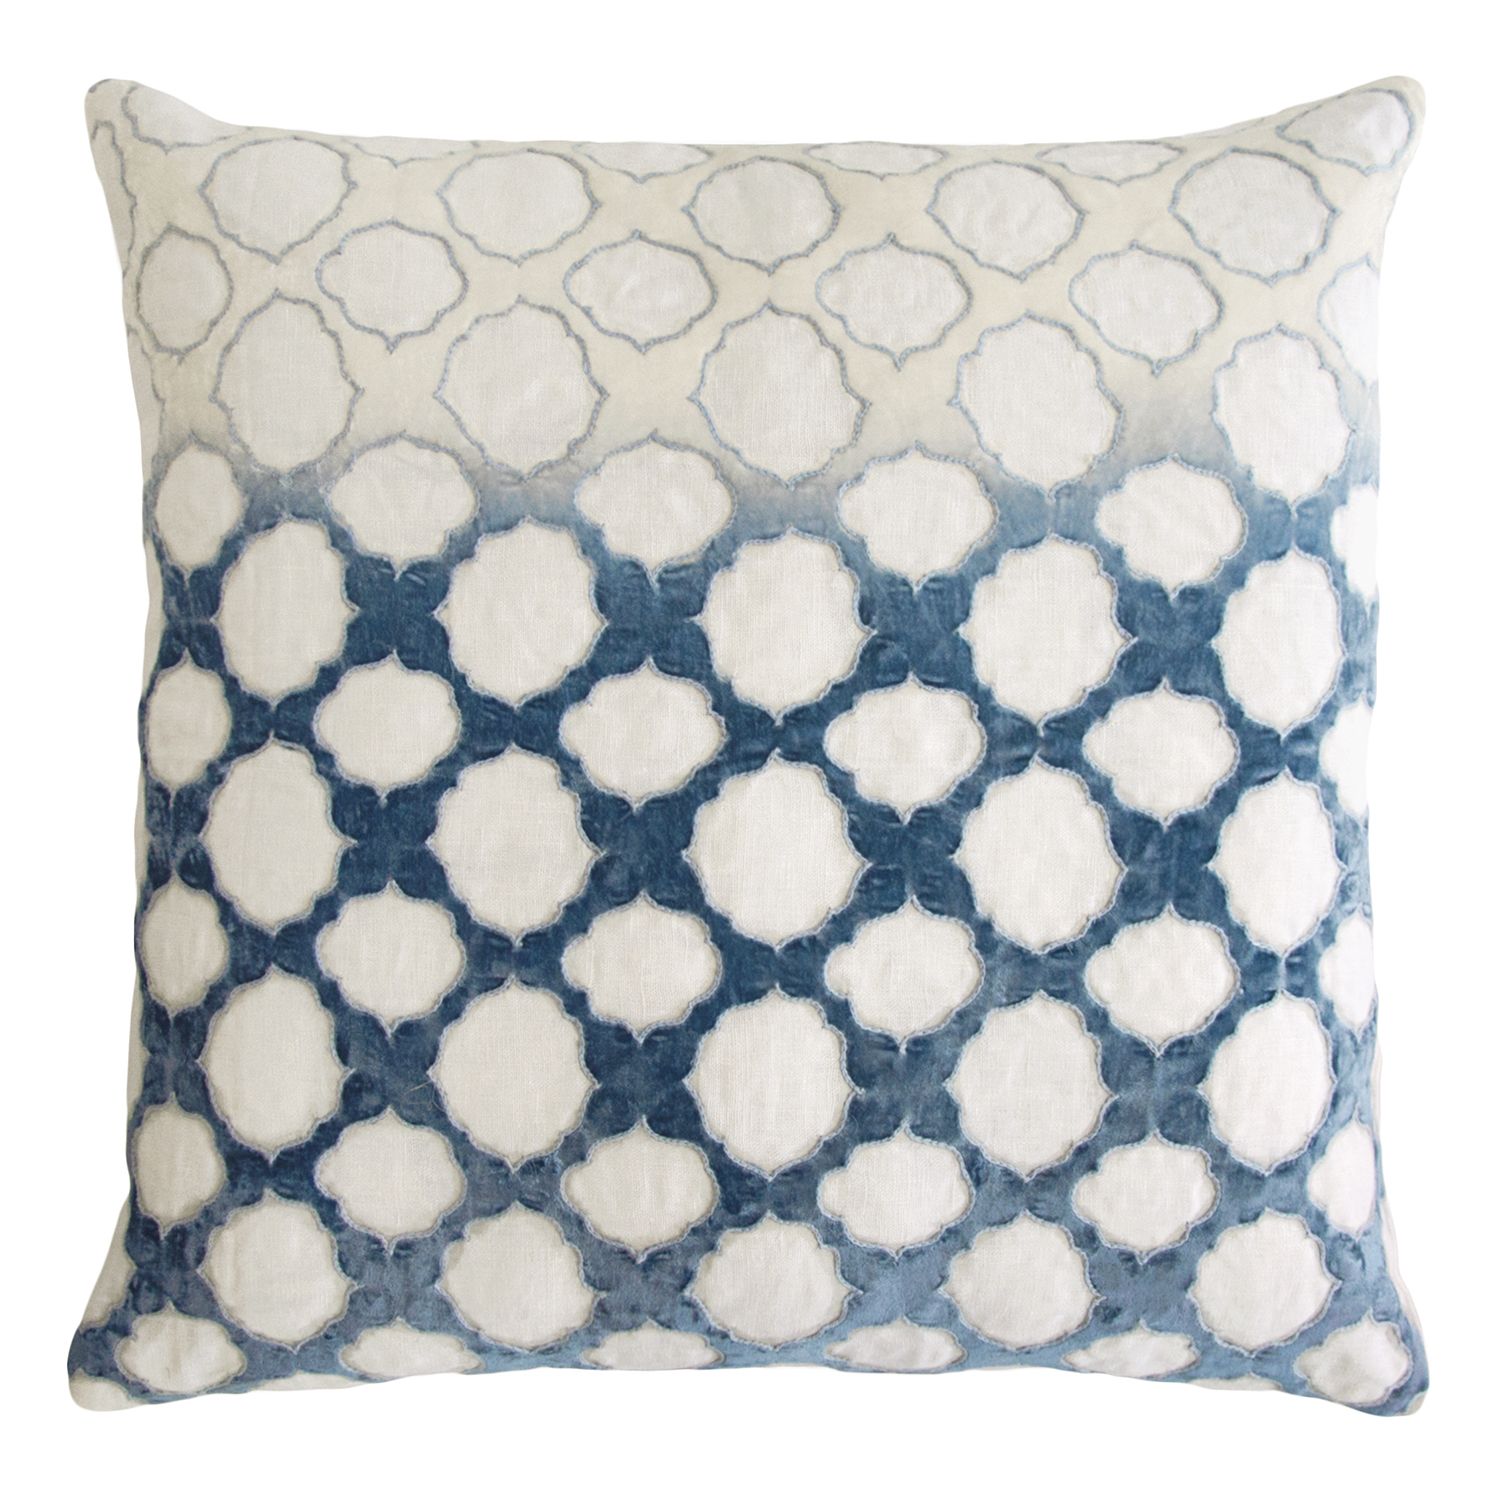 *Kevin OBrien Studio Fretwork Appliqued Linen Decorative Pillow